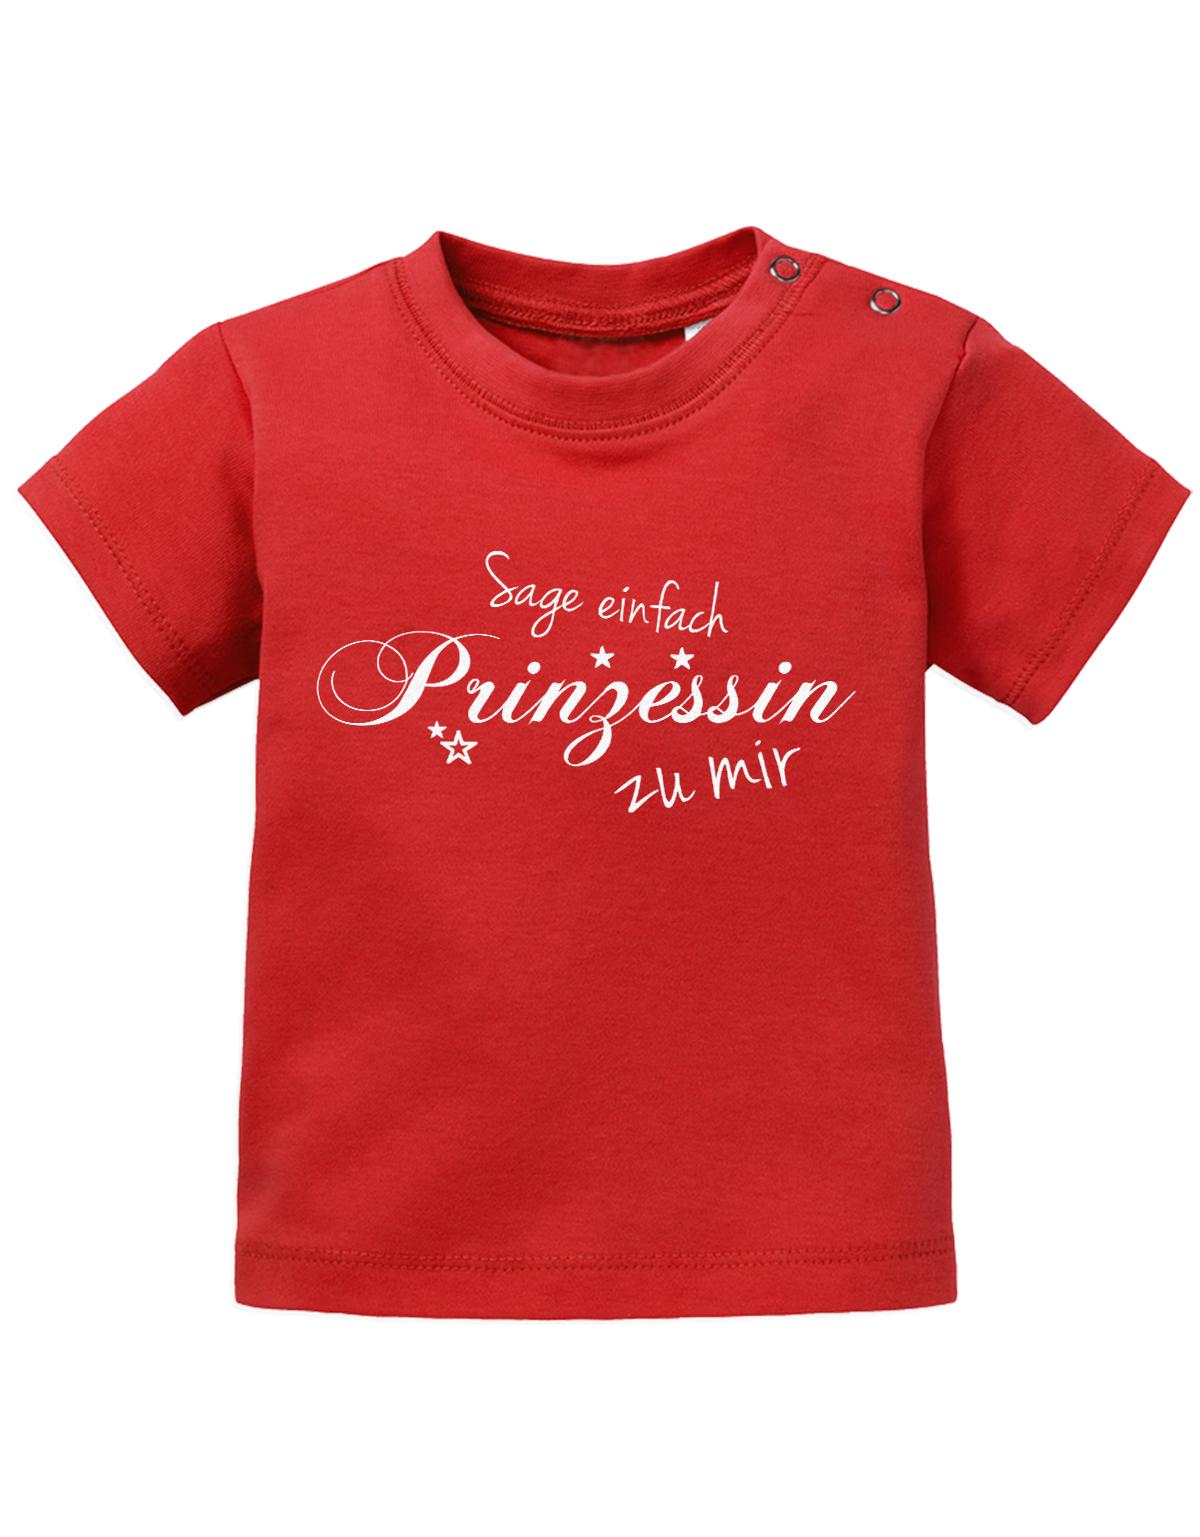 Lustiges Sprüche Baby Shirt Sage einfach Prinzessin zu mir. Rot